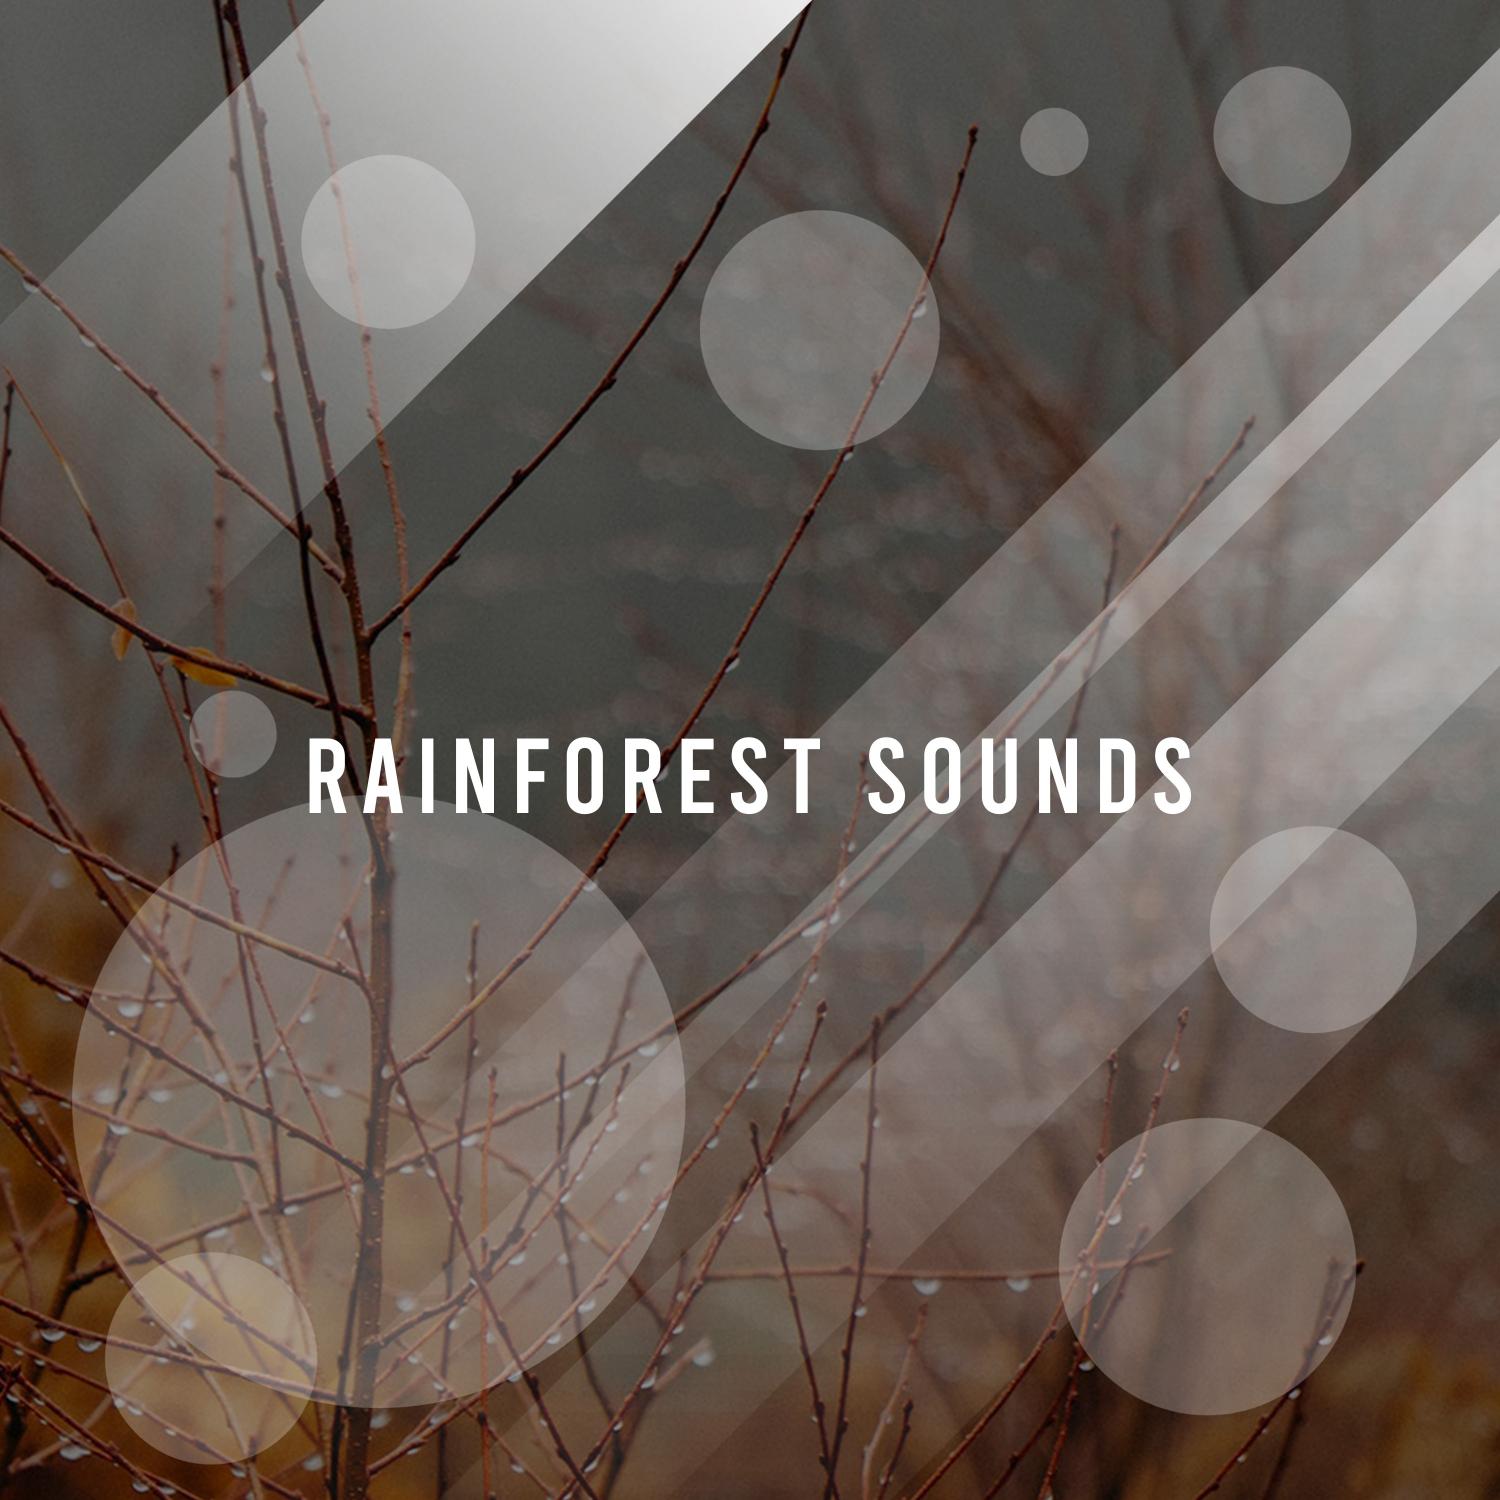 17 Incredible Rain Sounds for Sleep